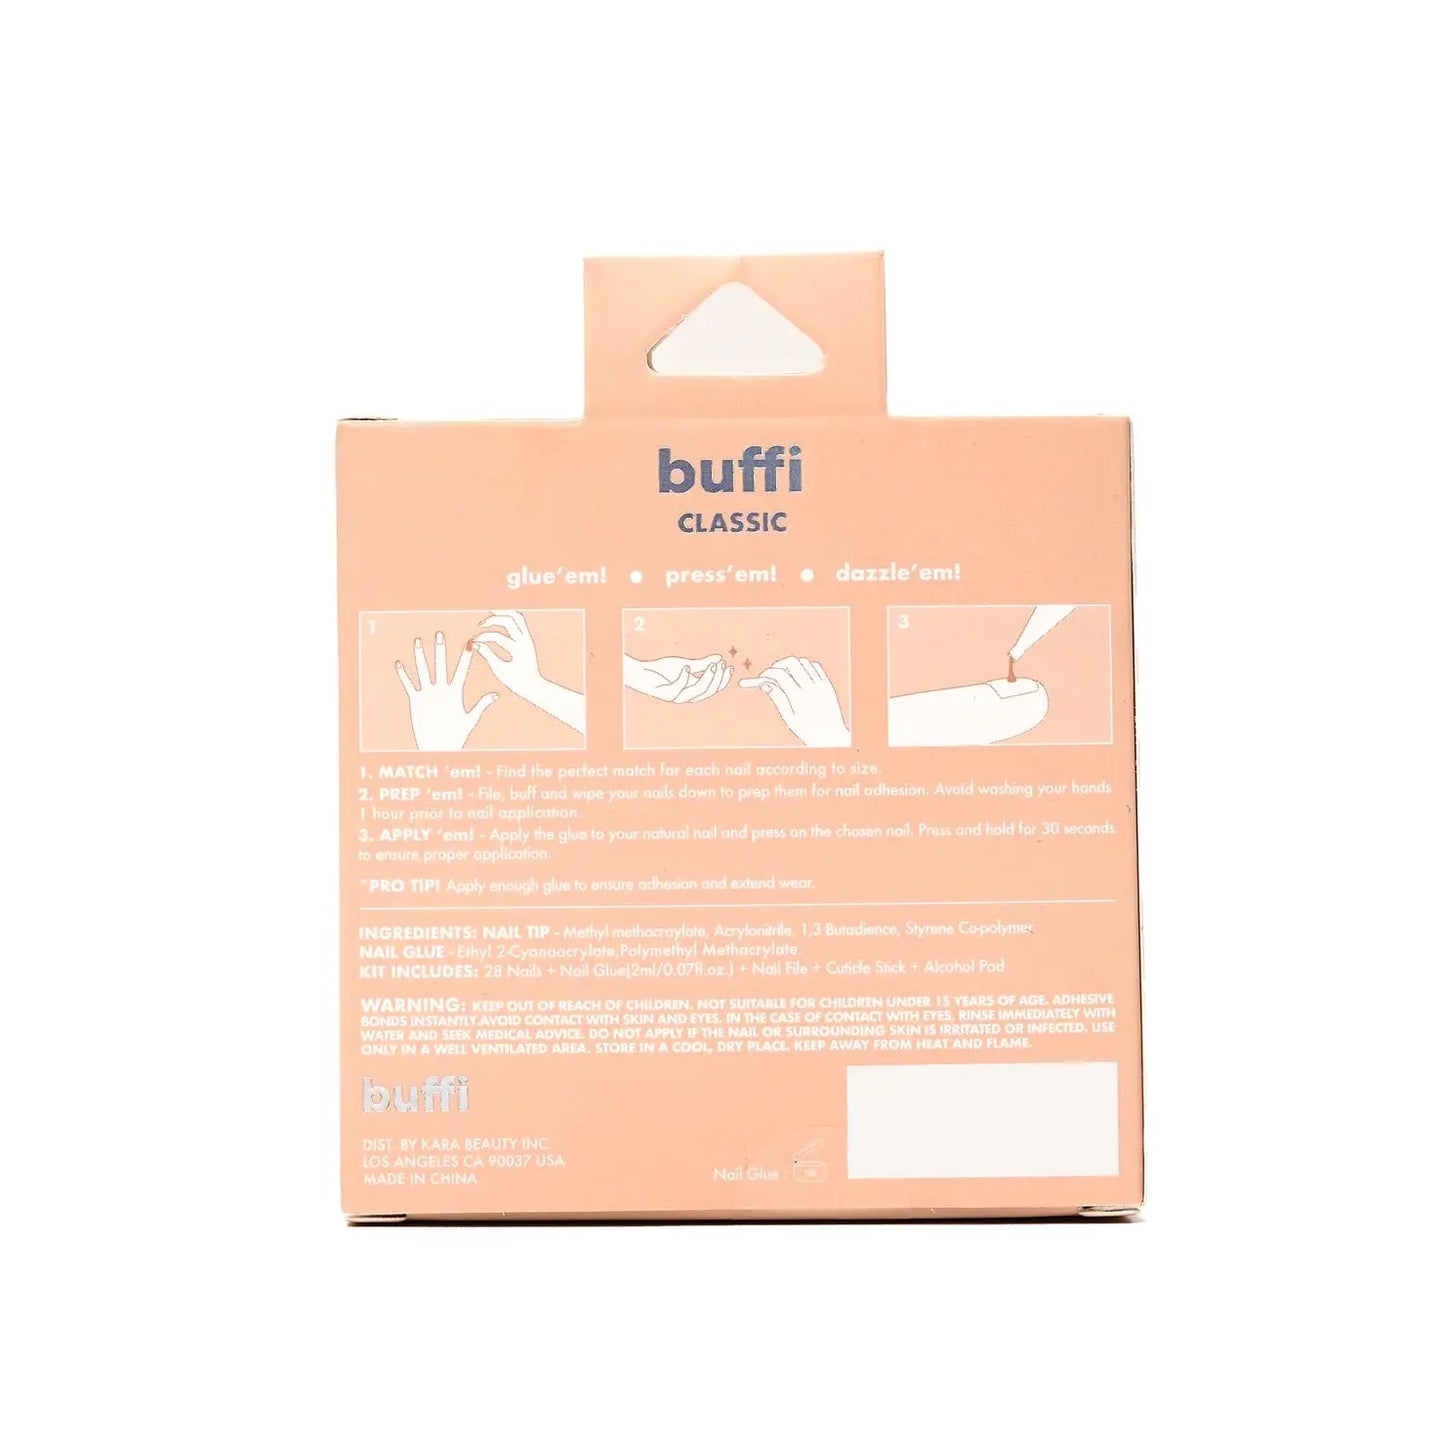 Buffi Press-On Nails - Sugar Tips